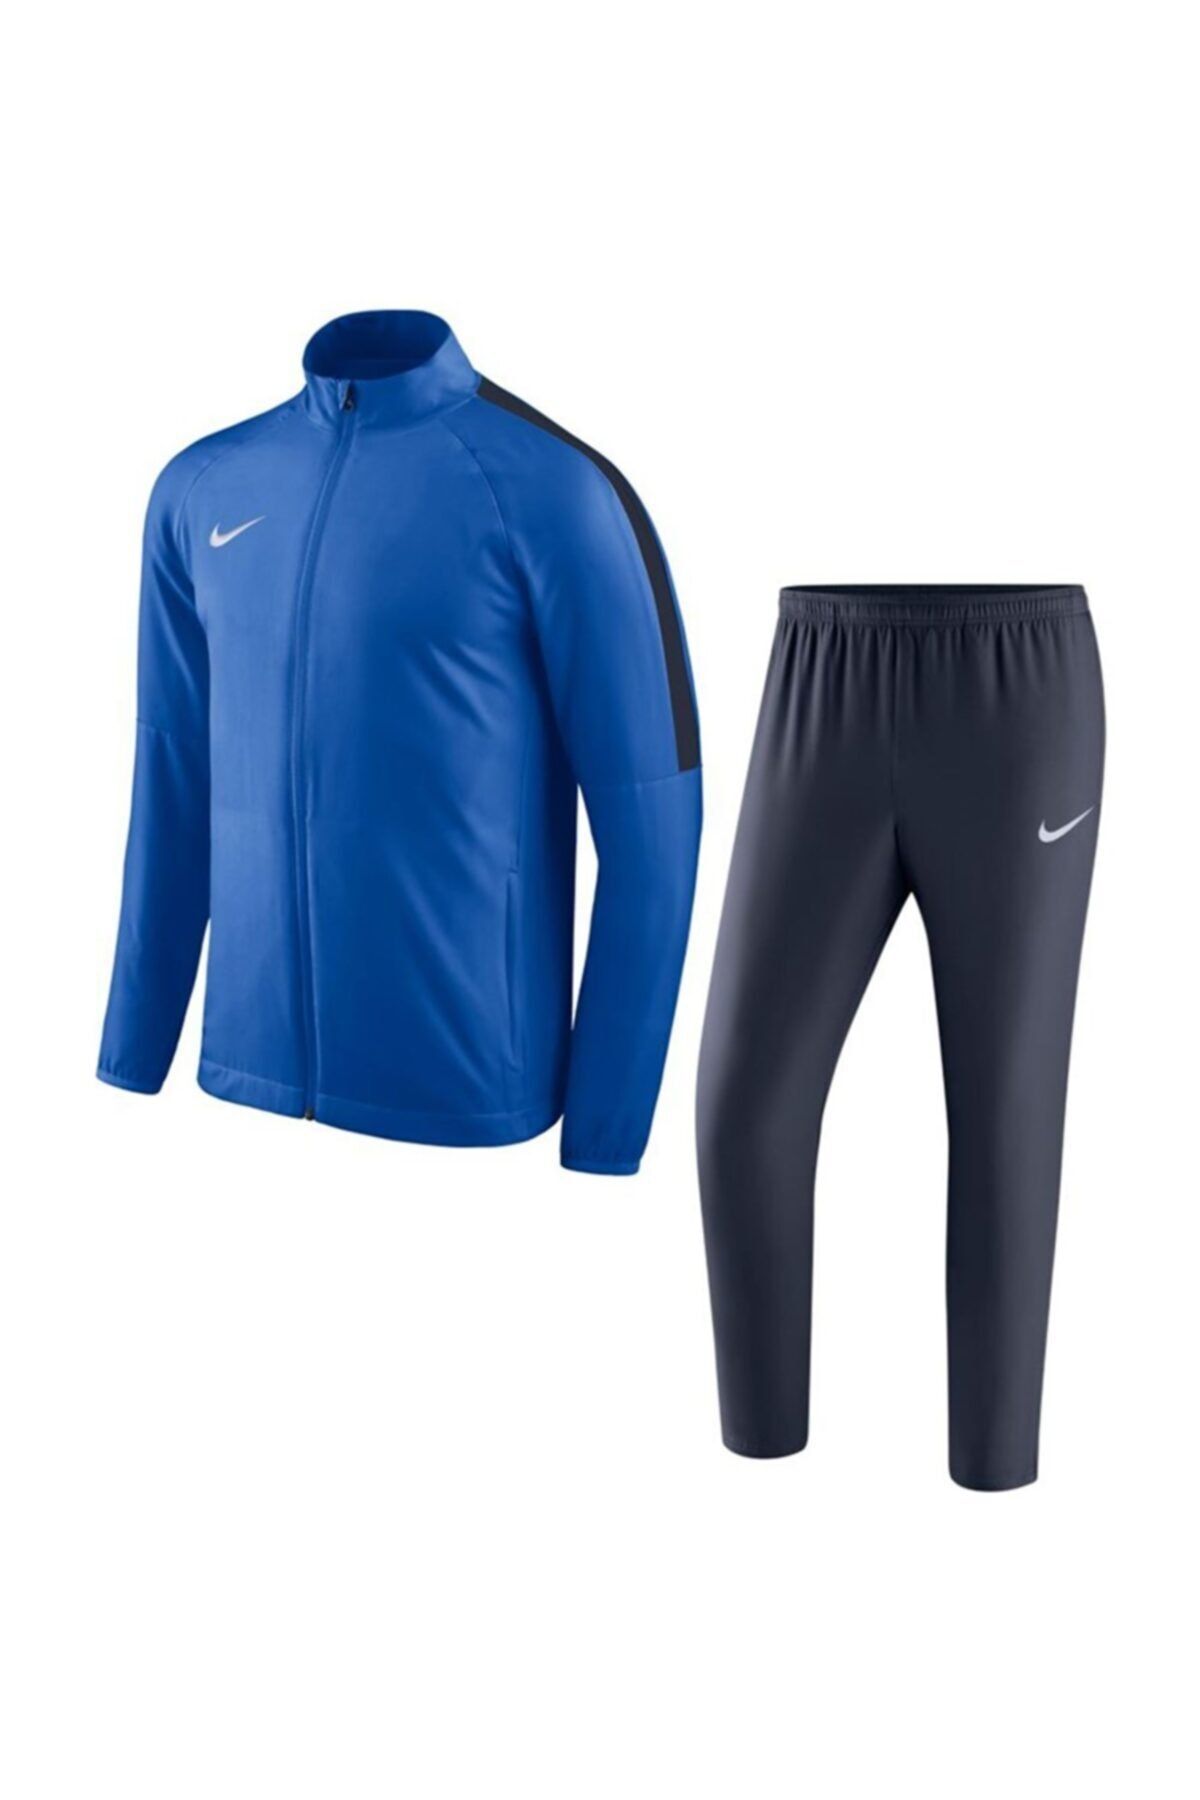 Nike Erkek Mavi Eşofman Takımı 893709-463